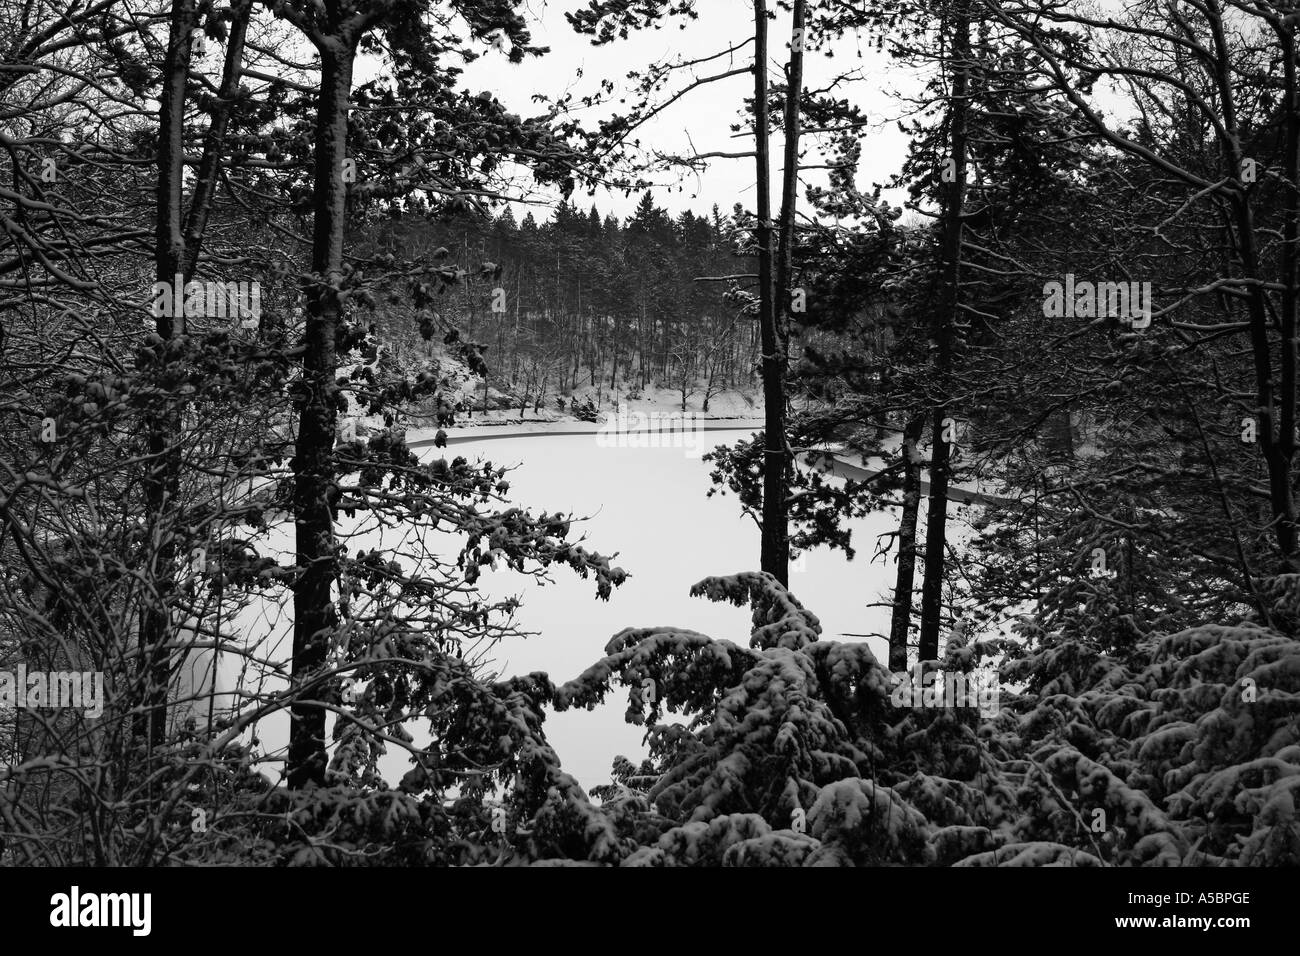 Le lac vu à travers les arbres dans la forêt d'hiver Banque D'Images